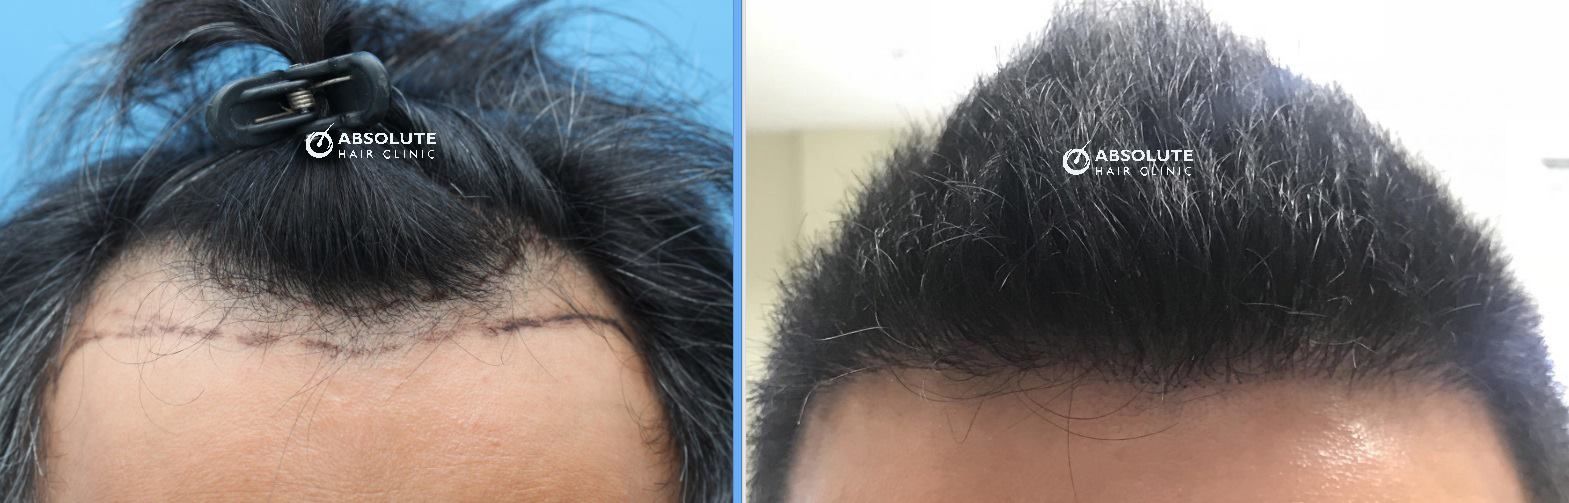 Cấy tóc FUE 2629 nang, kết quả sau 7 tháng - case 11